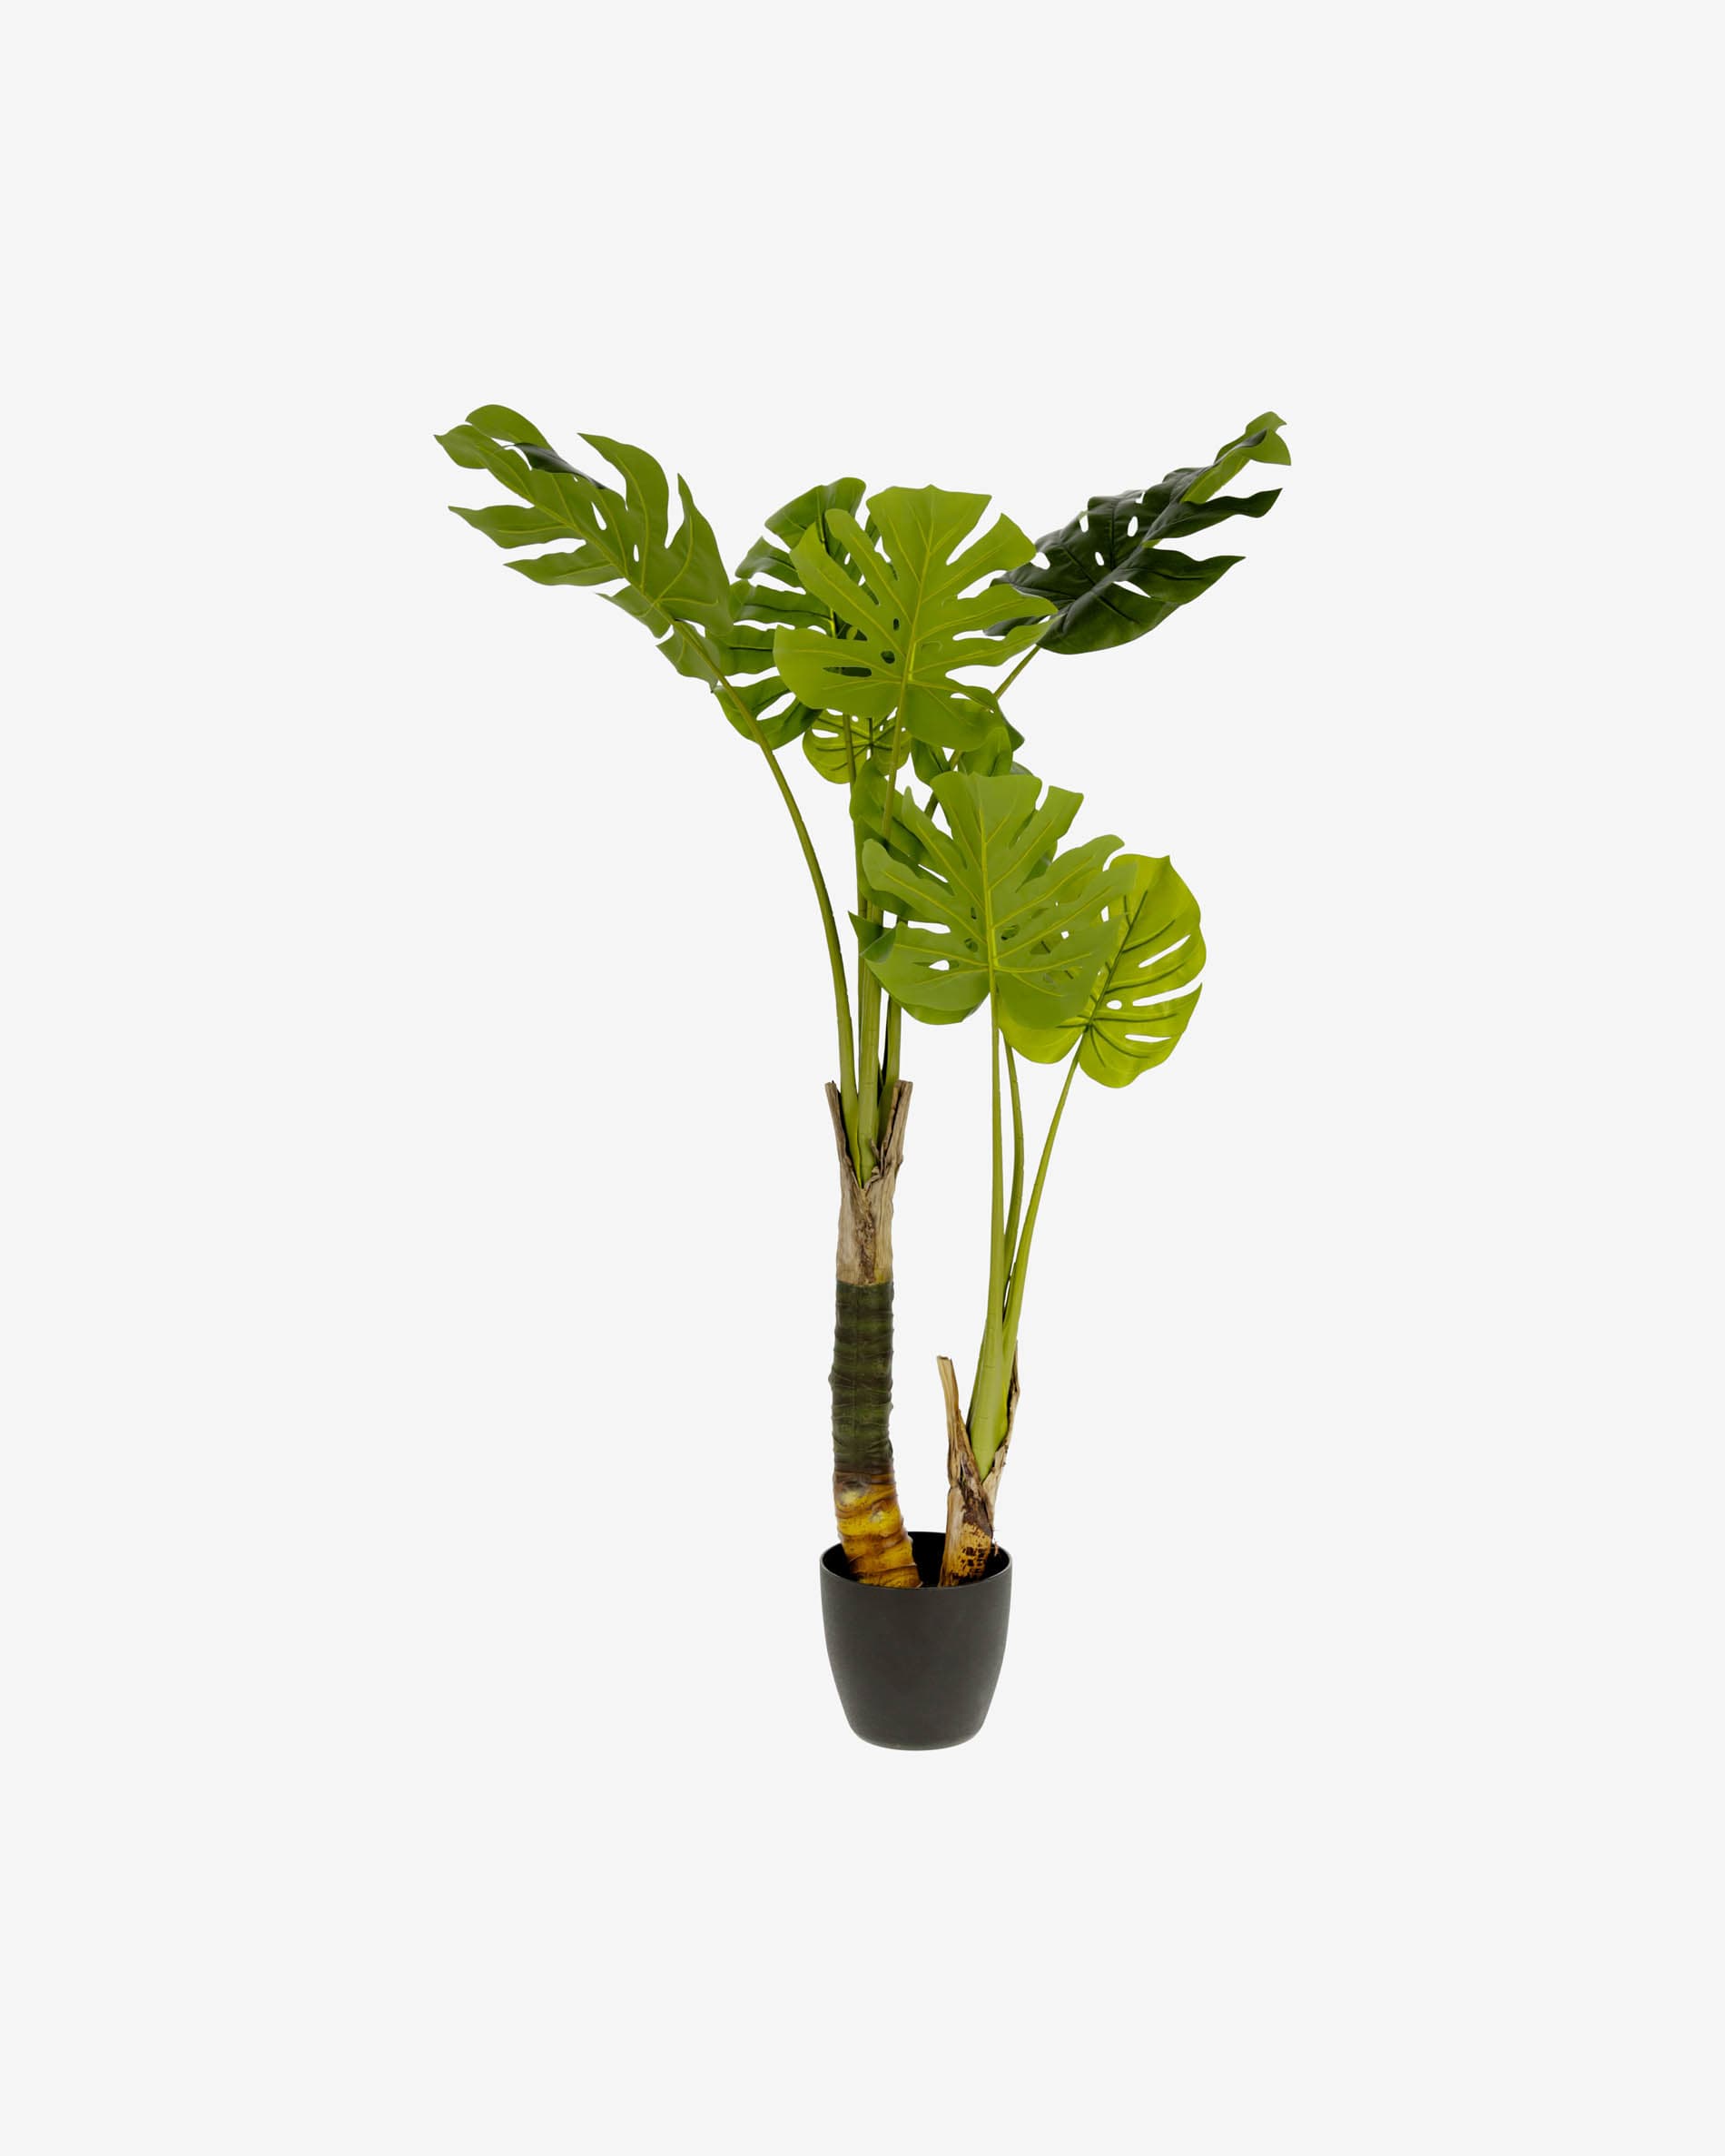 Pianta artificiale di monstera 170 cm con 16 foglie in vaso